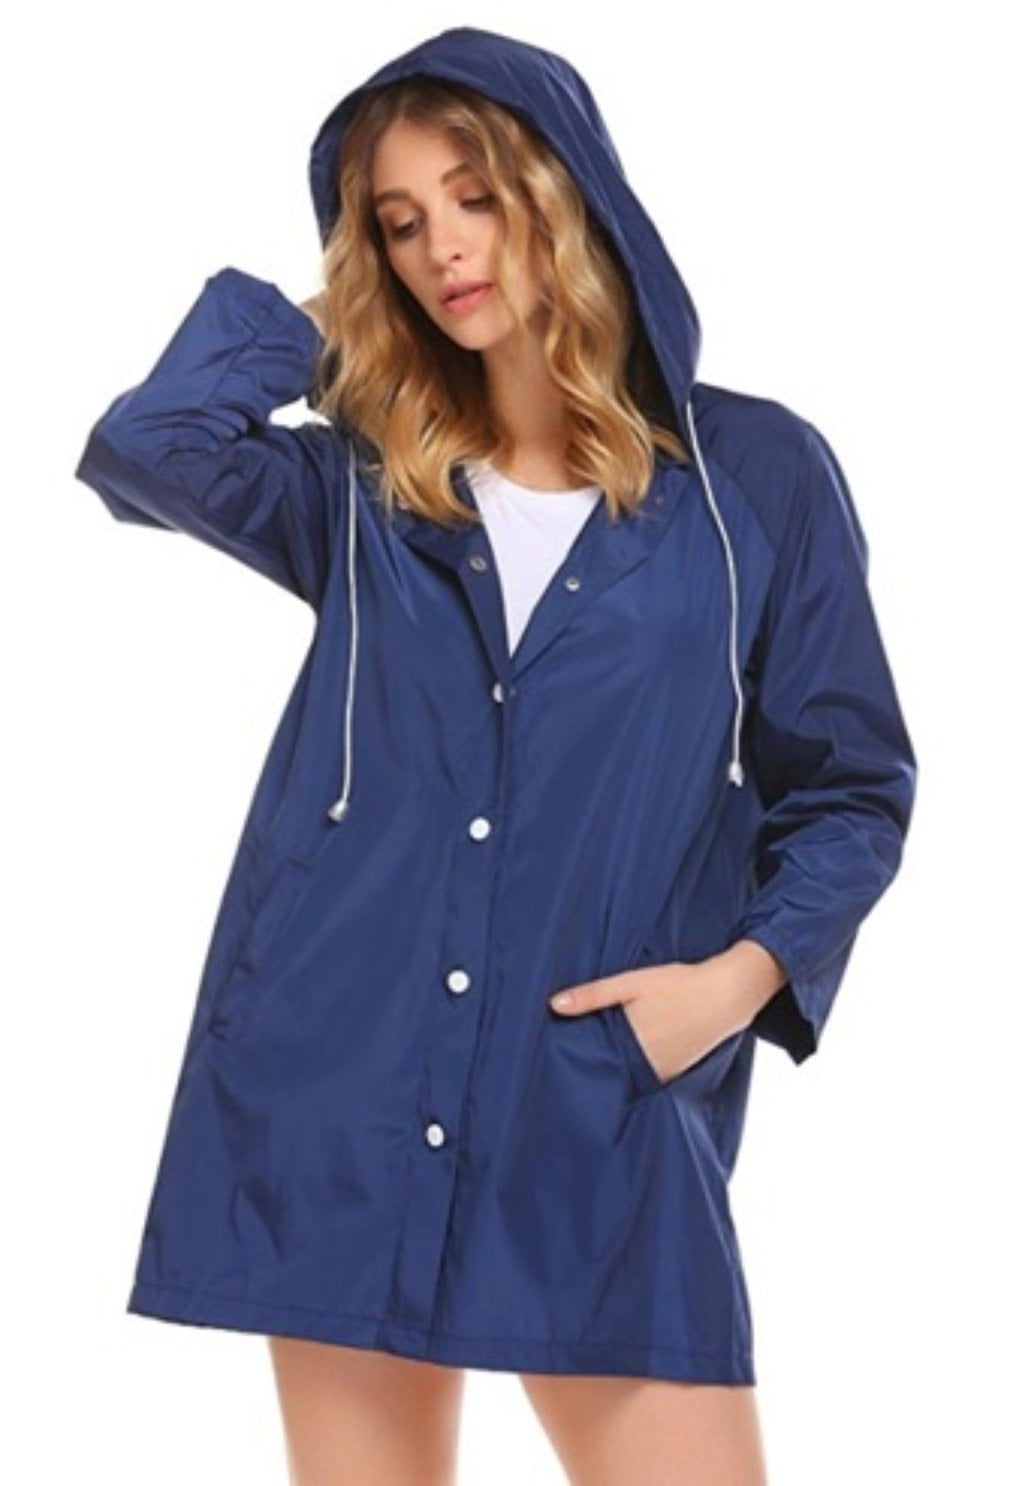 SoTeer Women's Waterproof Rain Jacket Lightweight Hooded Windbreaker Packable Active Outdoor Raincoat S-XXXL 